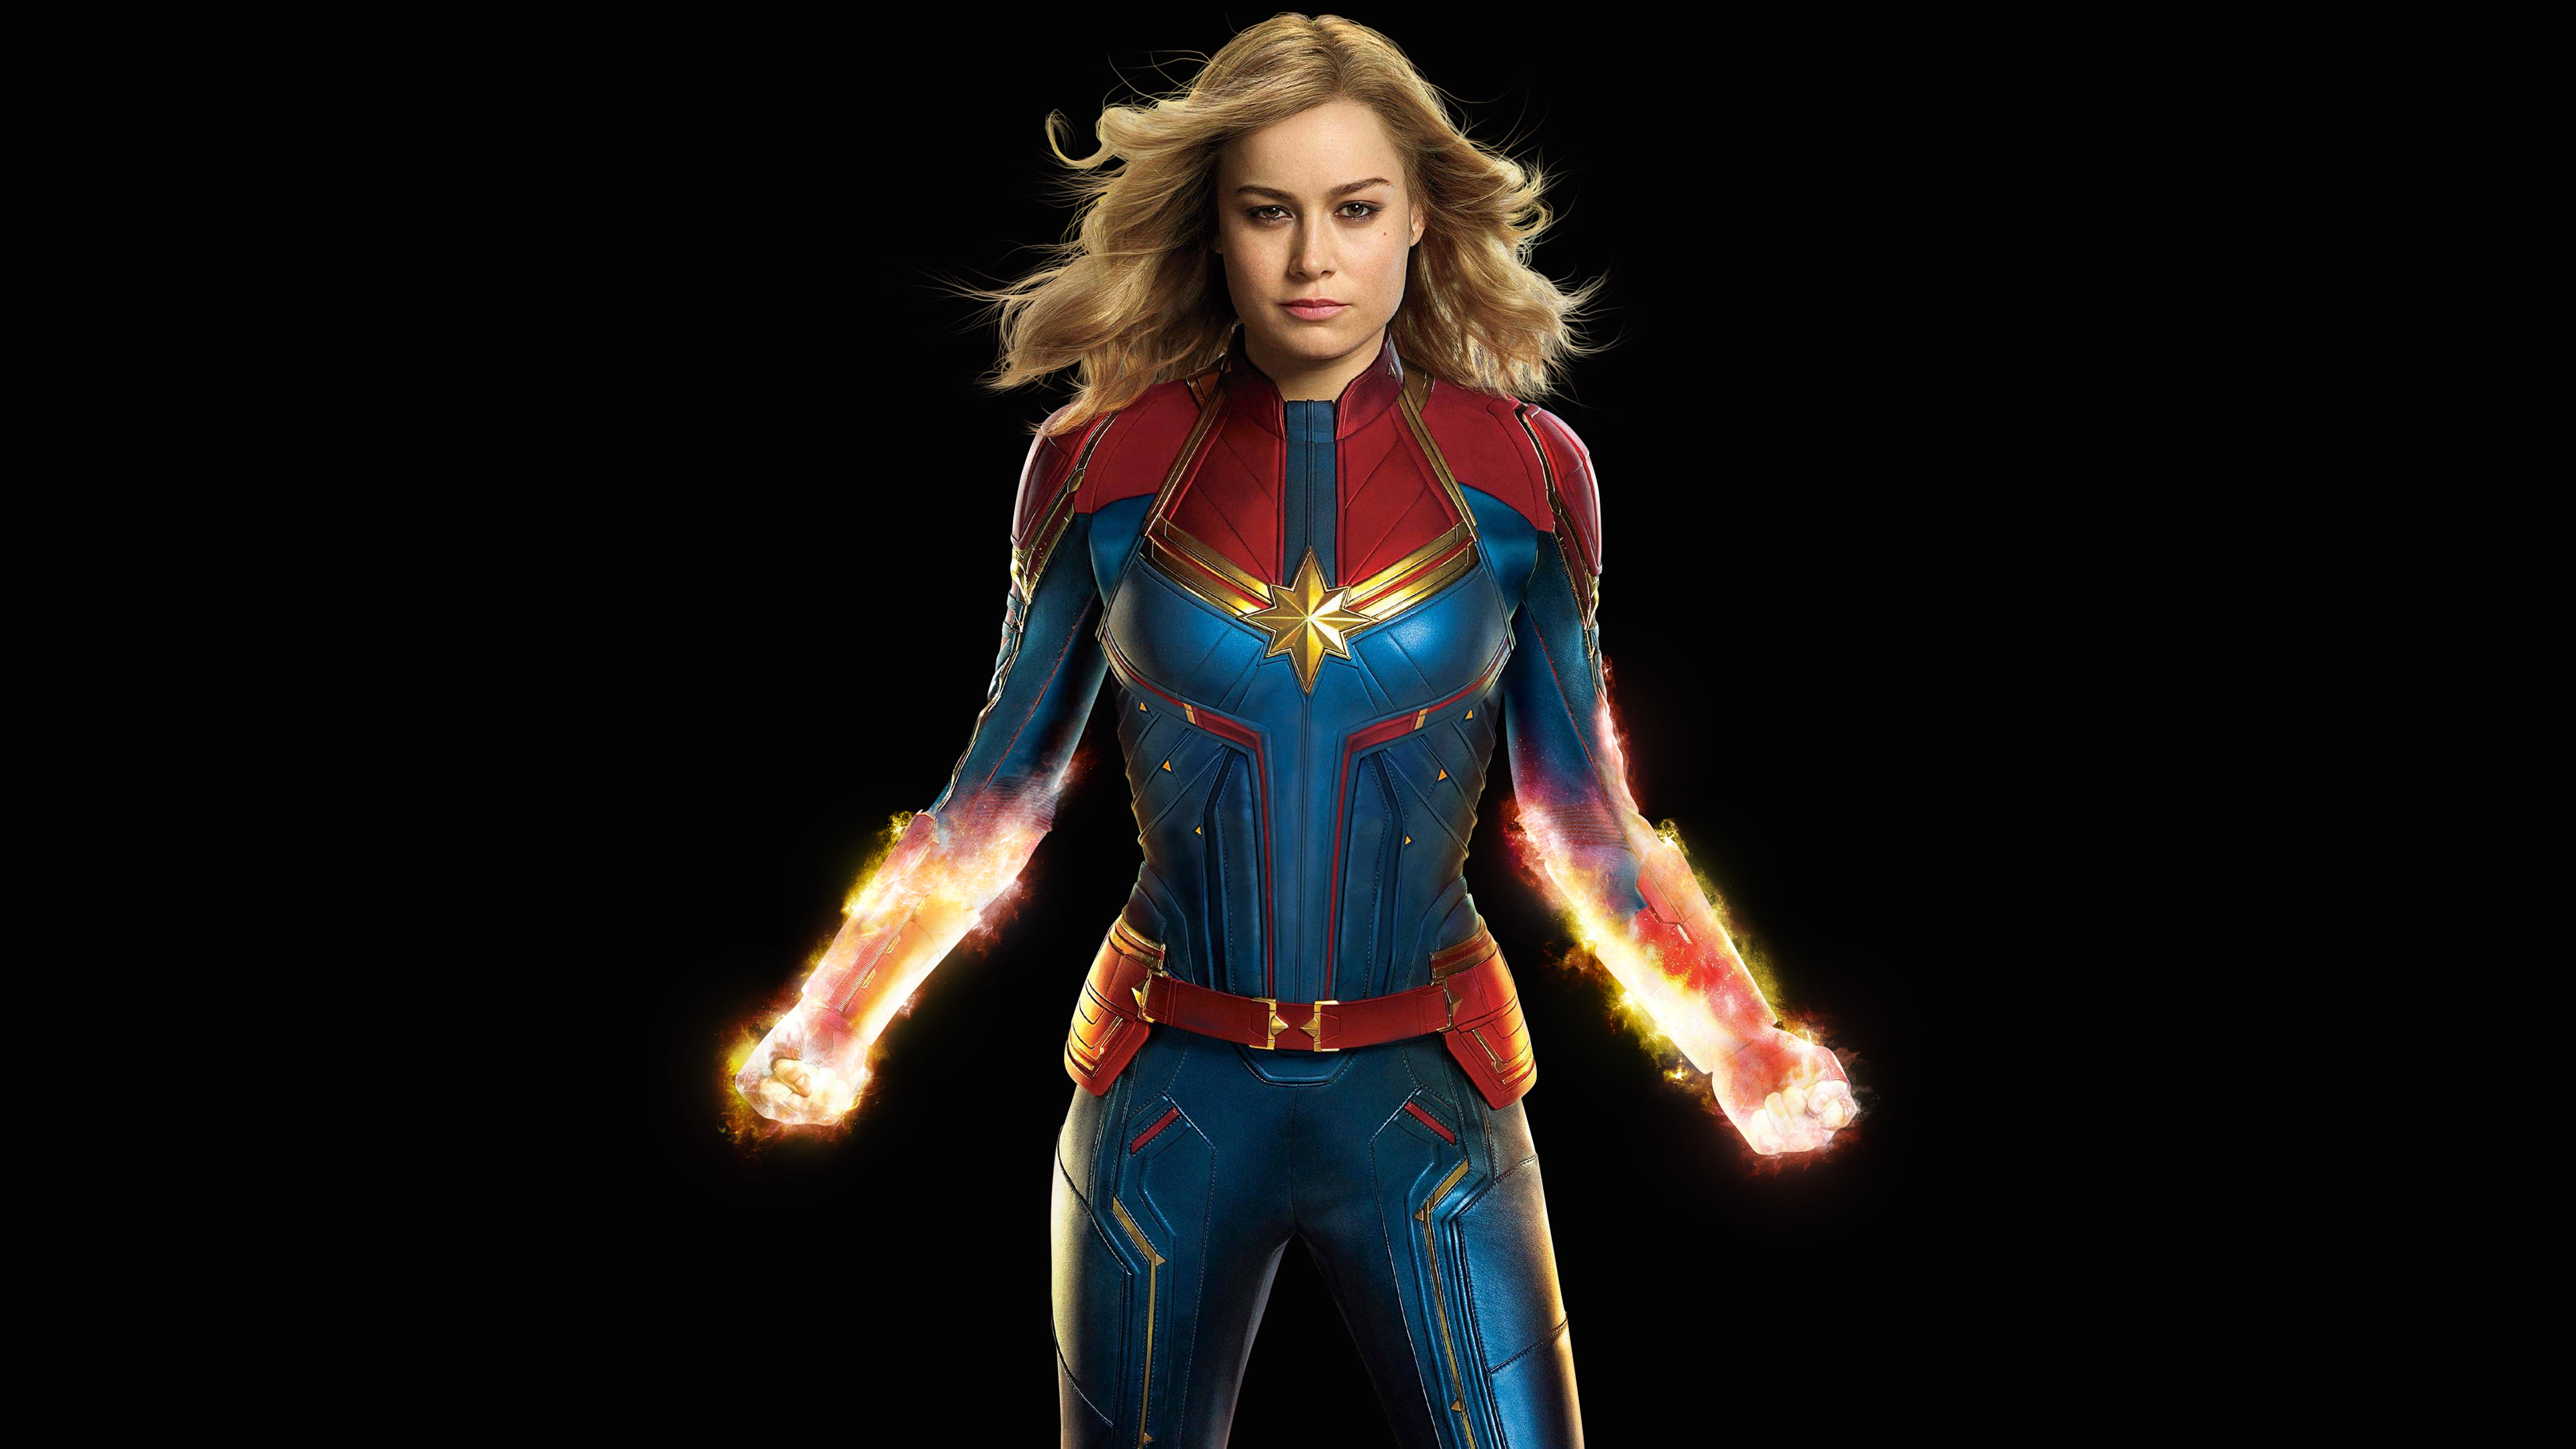 Brie Larson As Captain Marvel 4k Wallpapers - Captain Marvel Wallpaper Black - HD Wallpaper 